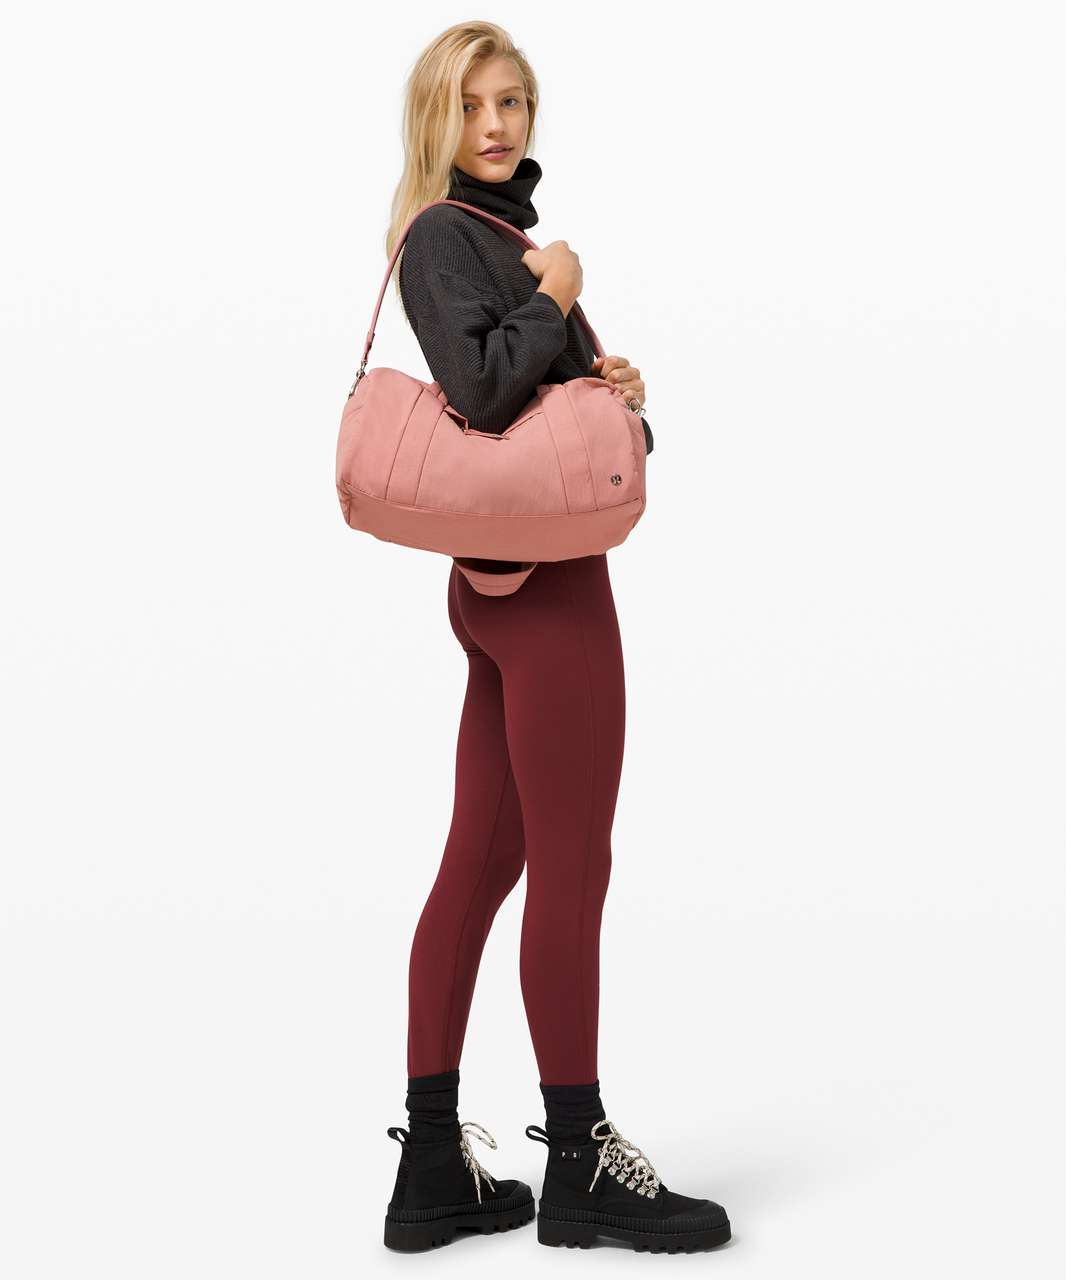 Lululemon On My Level Barrel Bag *16L - Deco Pink